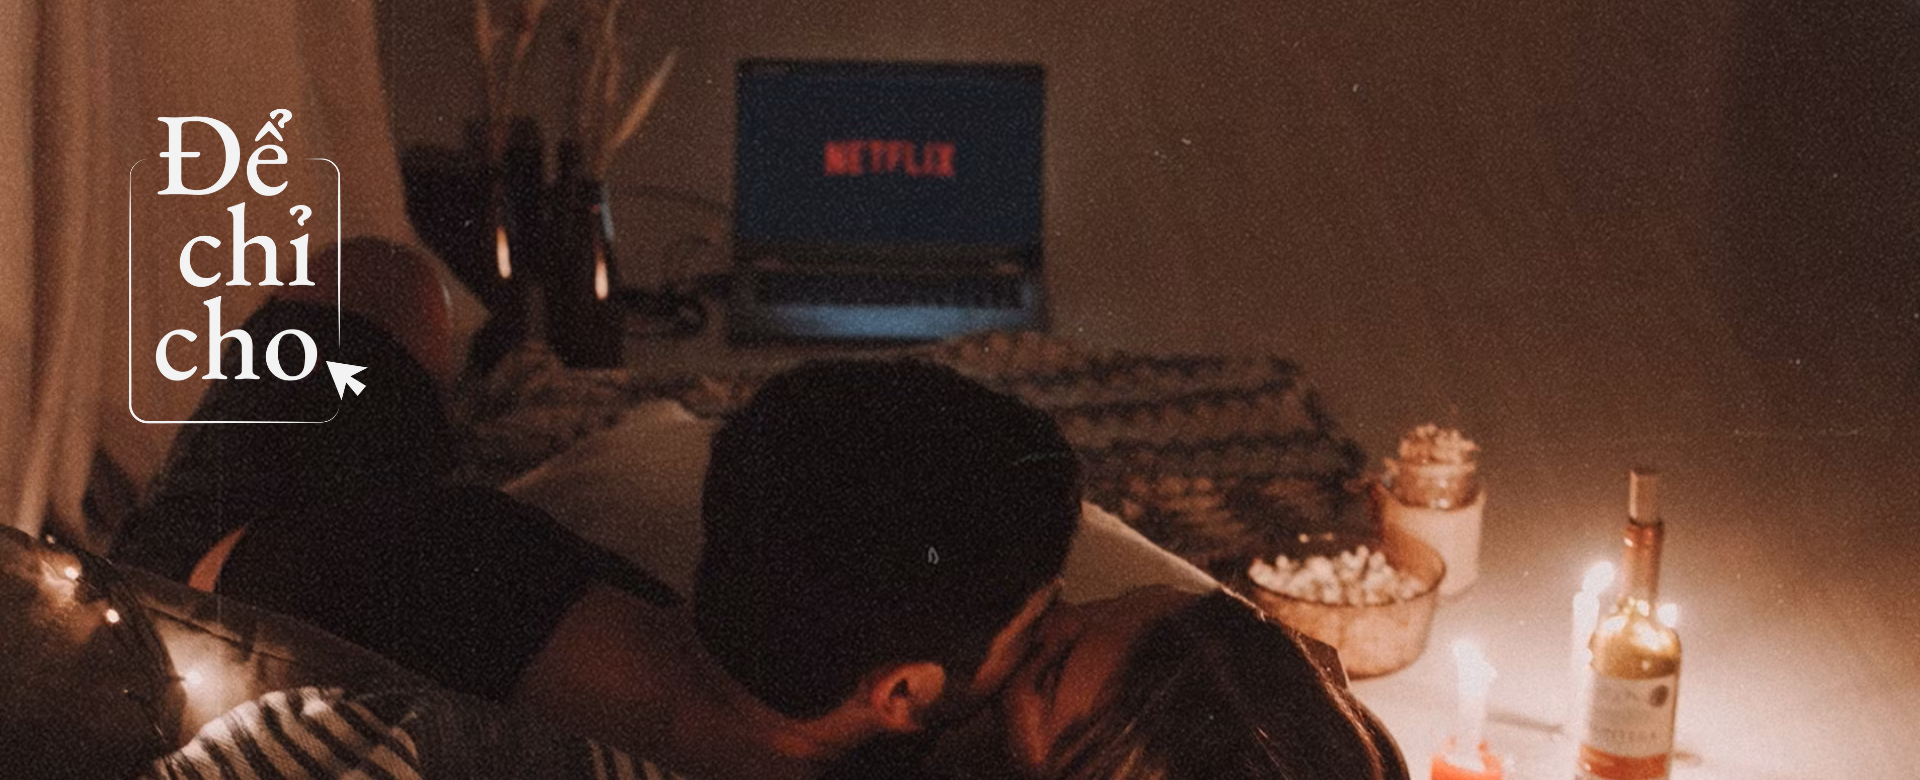 4 series Netflix để chill tại nhà ngày Valentine